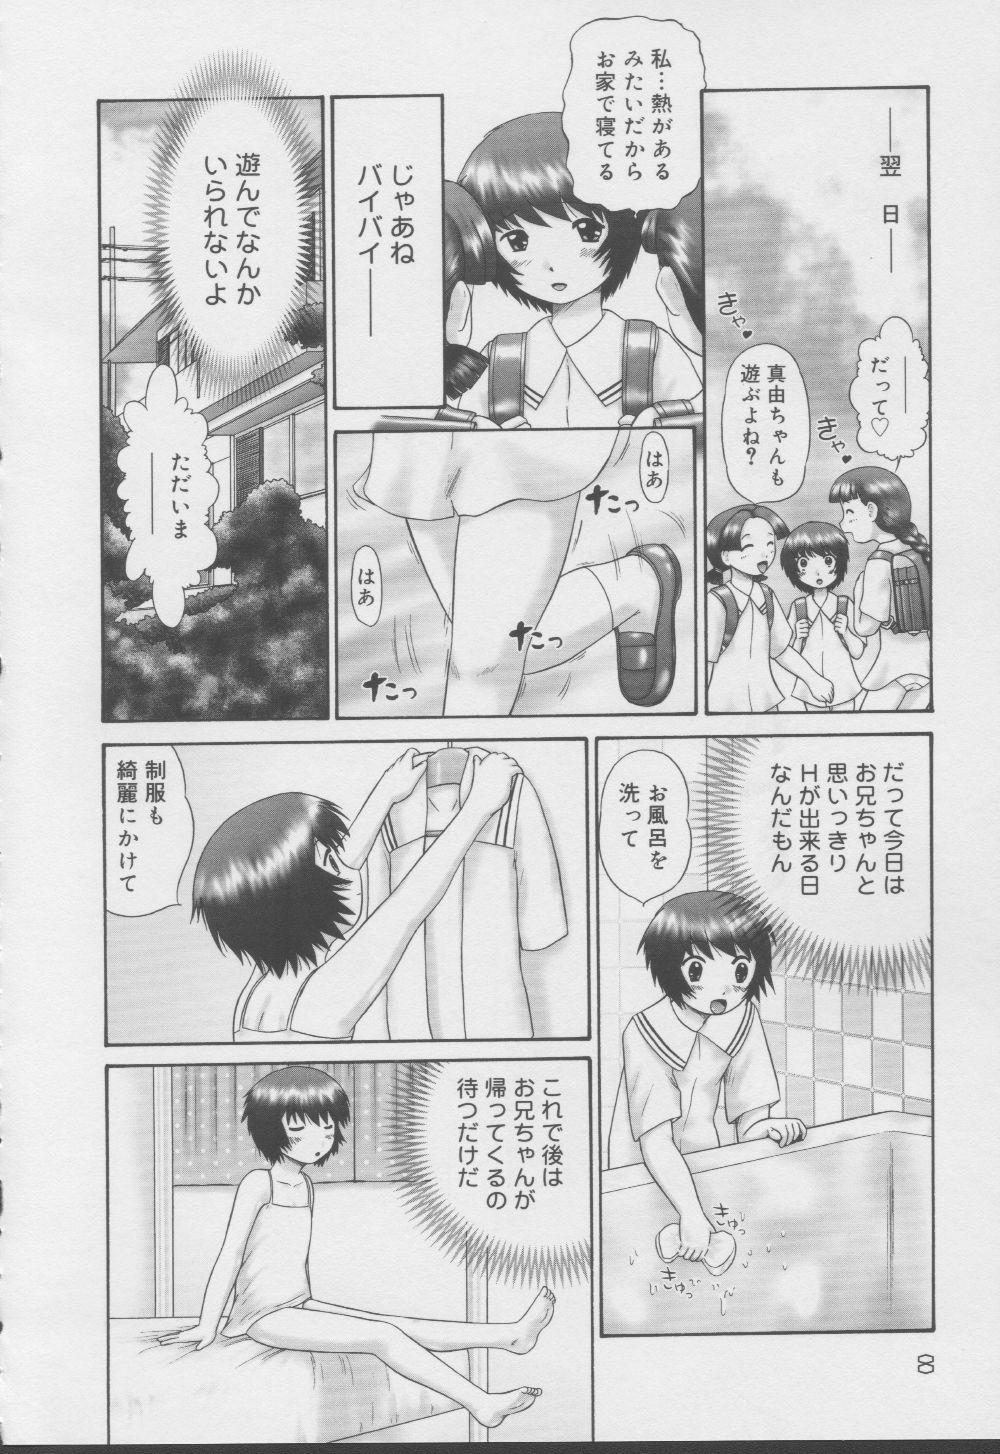 Milk Kazoku no Shisen Shisshiki 2 Stroking - Page 8